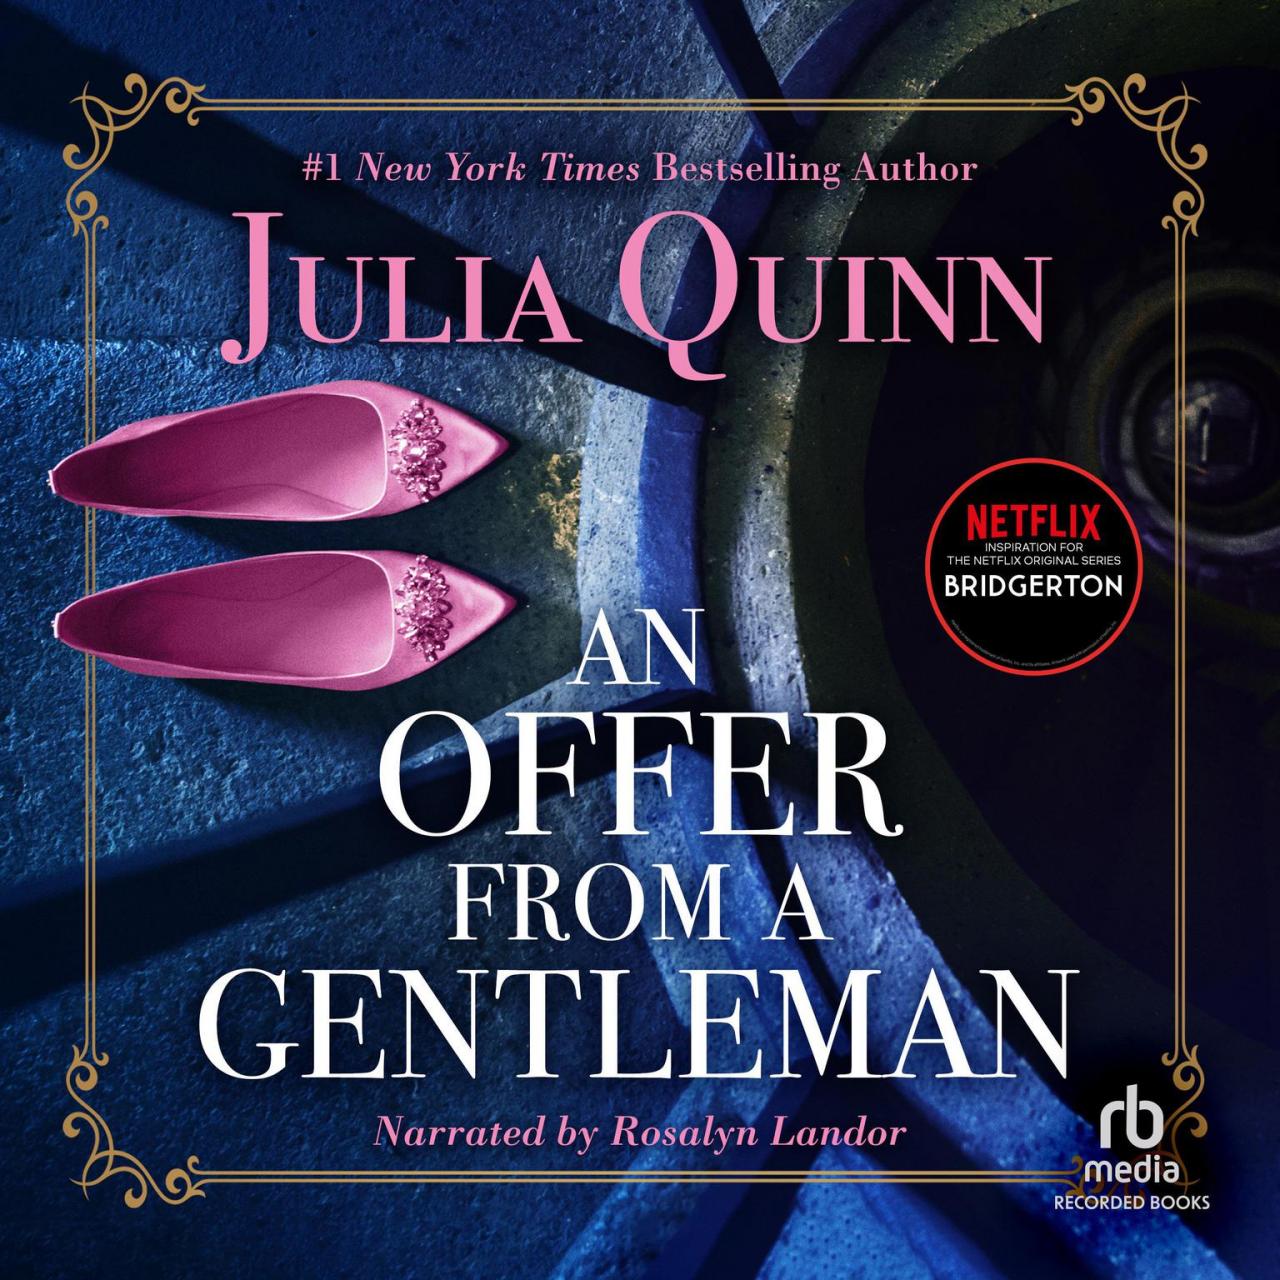 An offer from a gentleman book